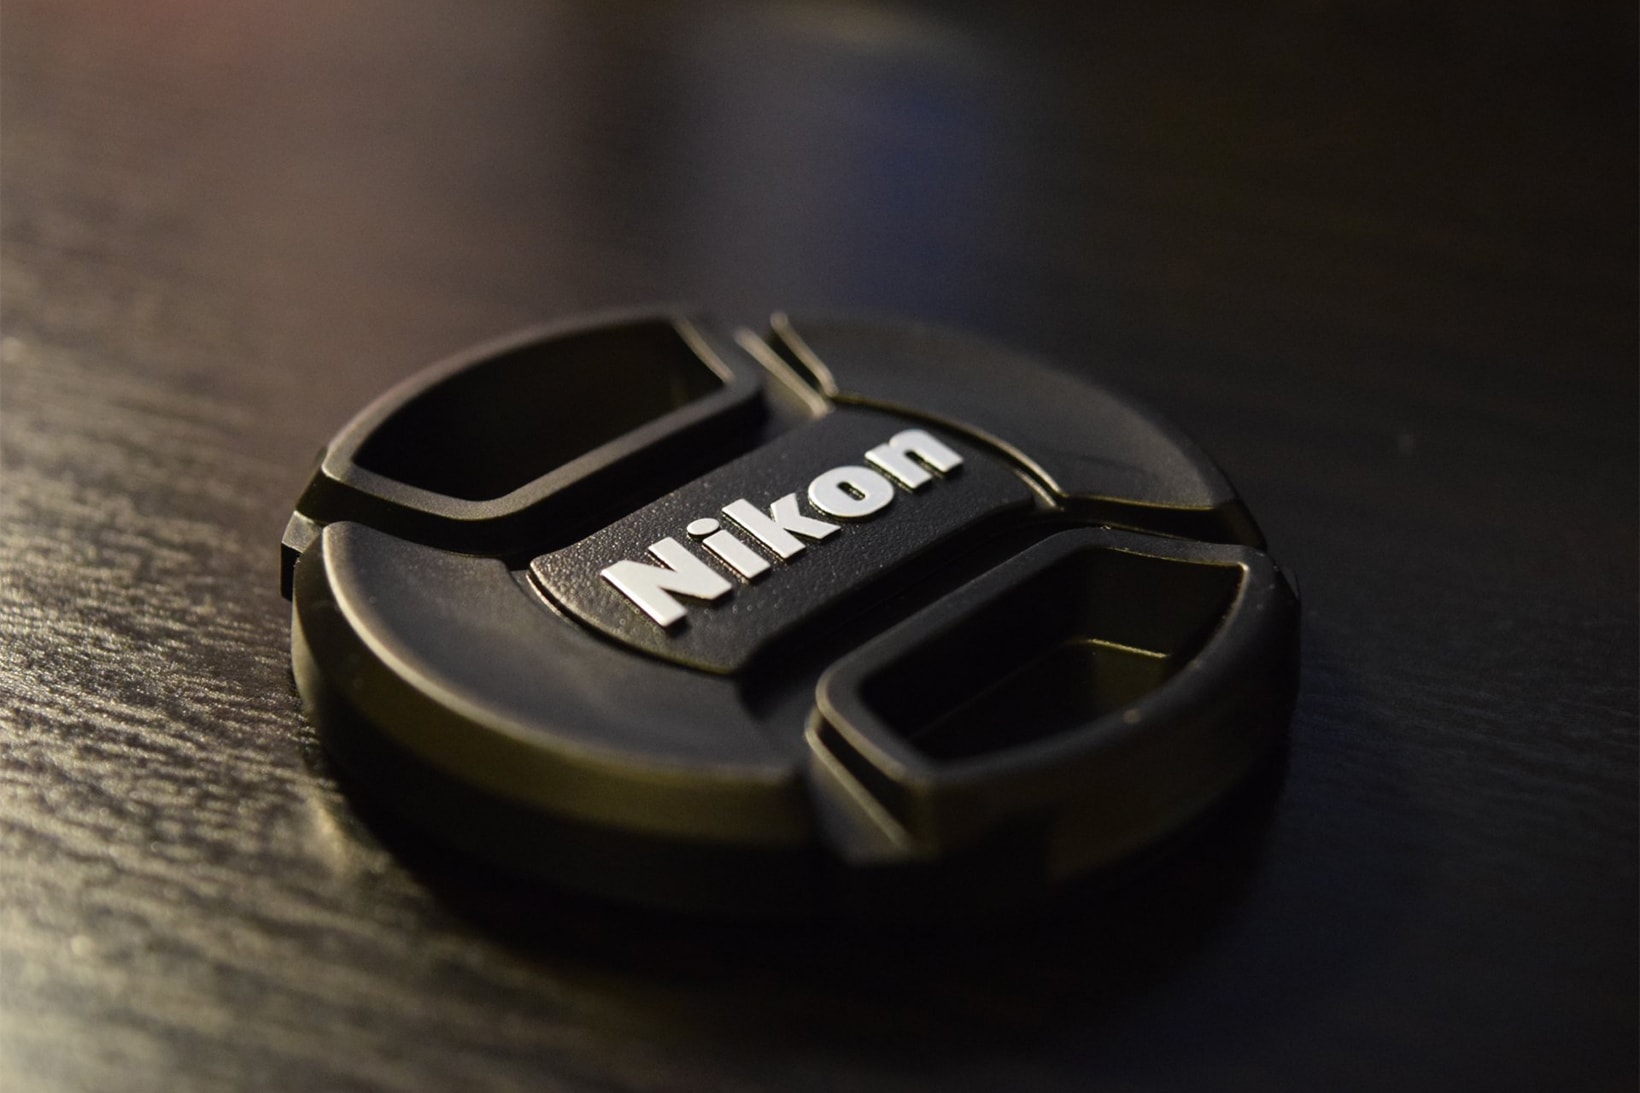 Nikon Extraordinary Loss